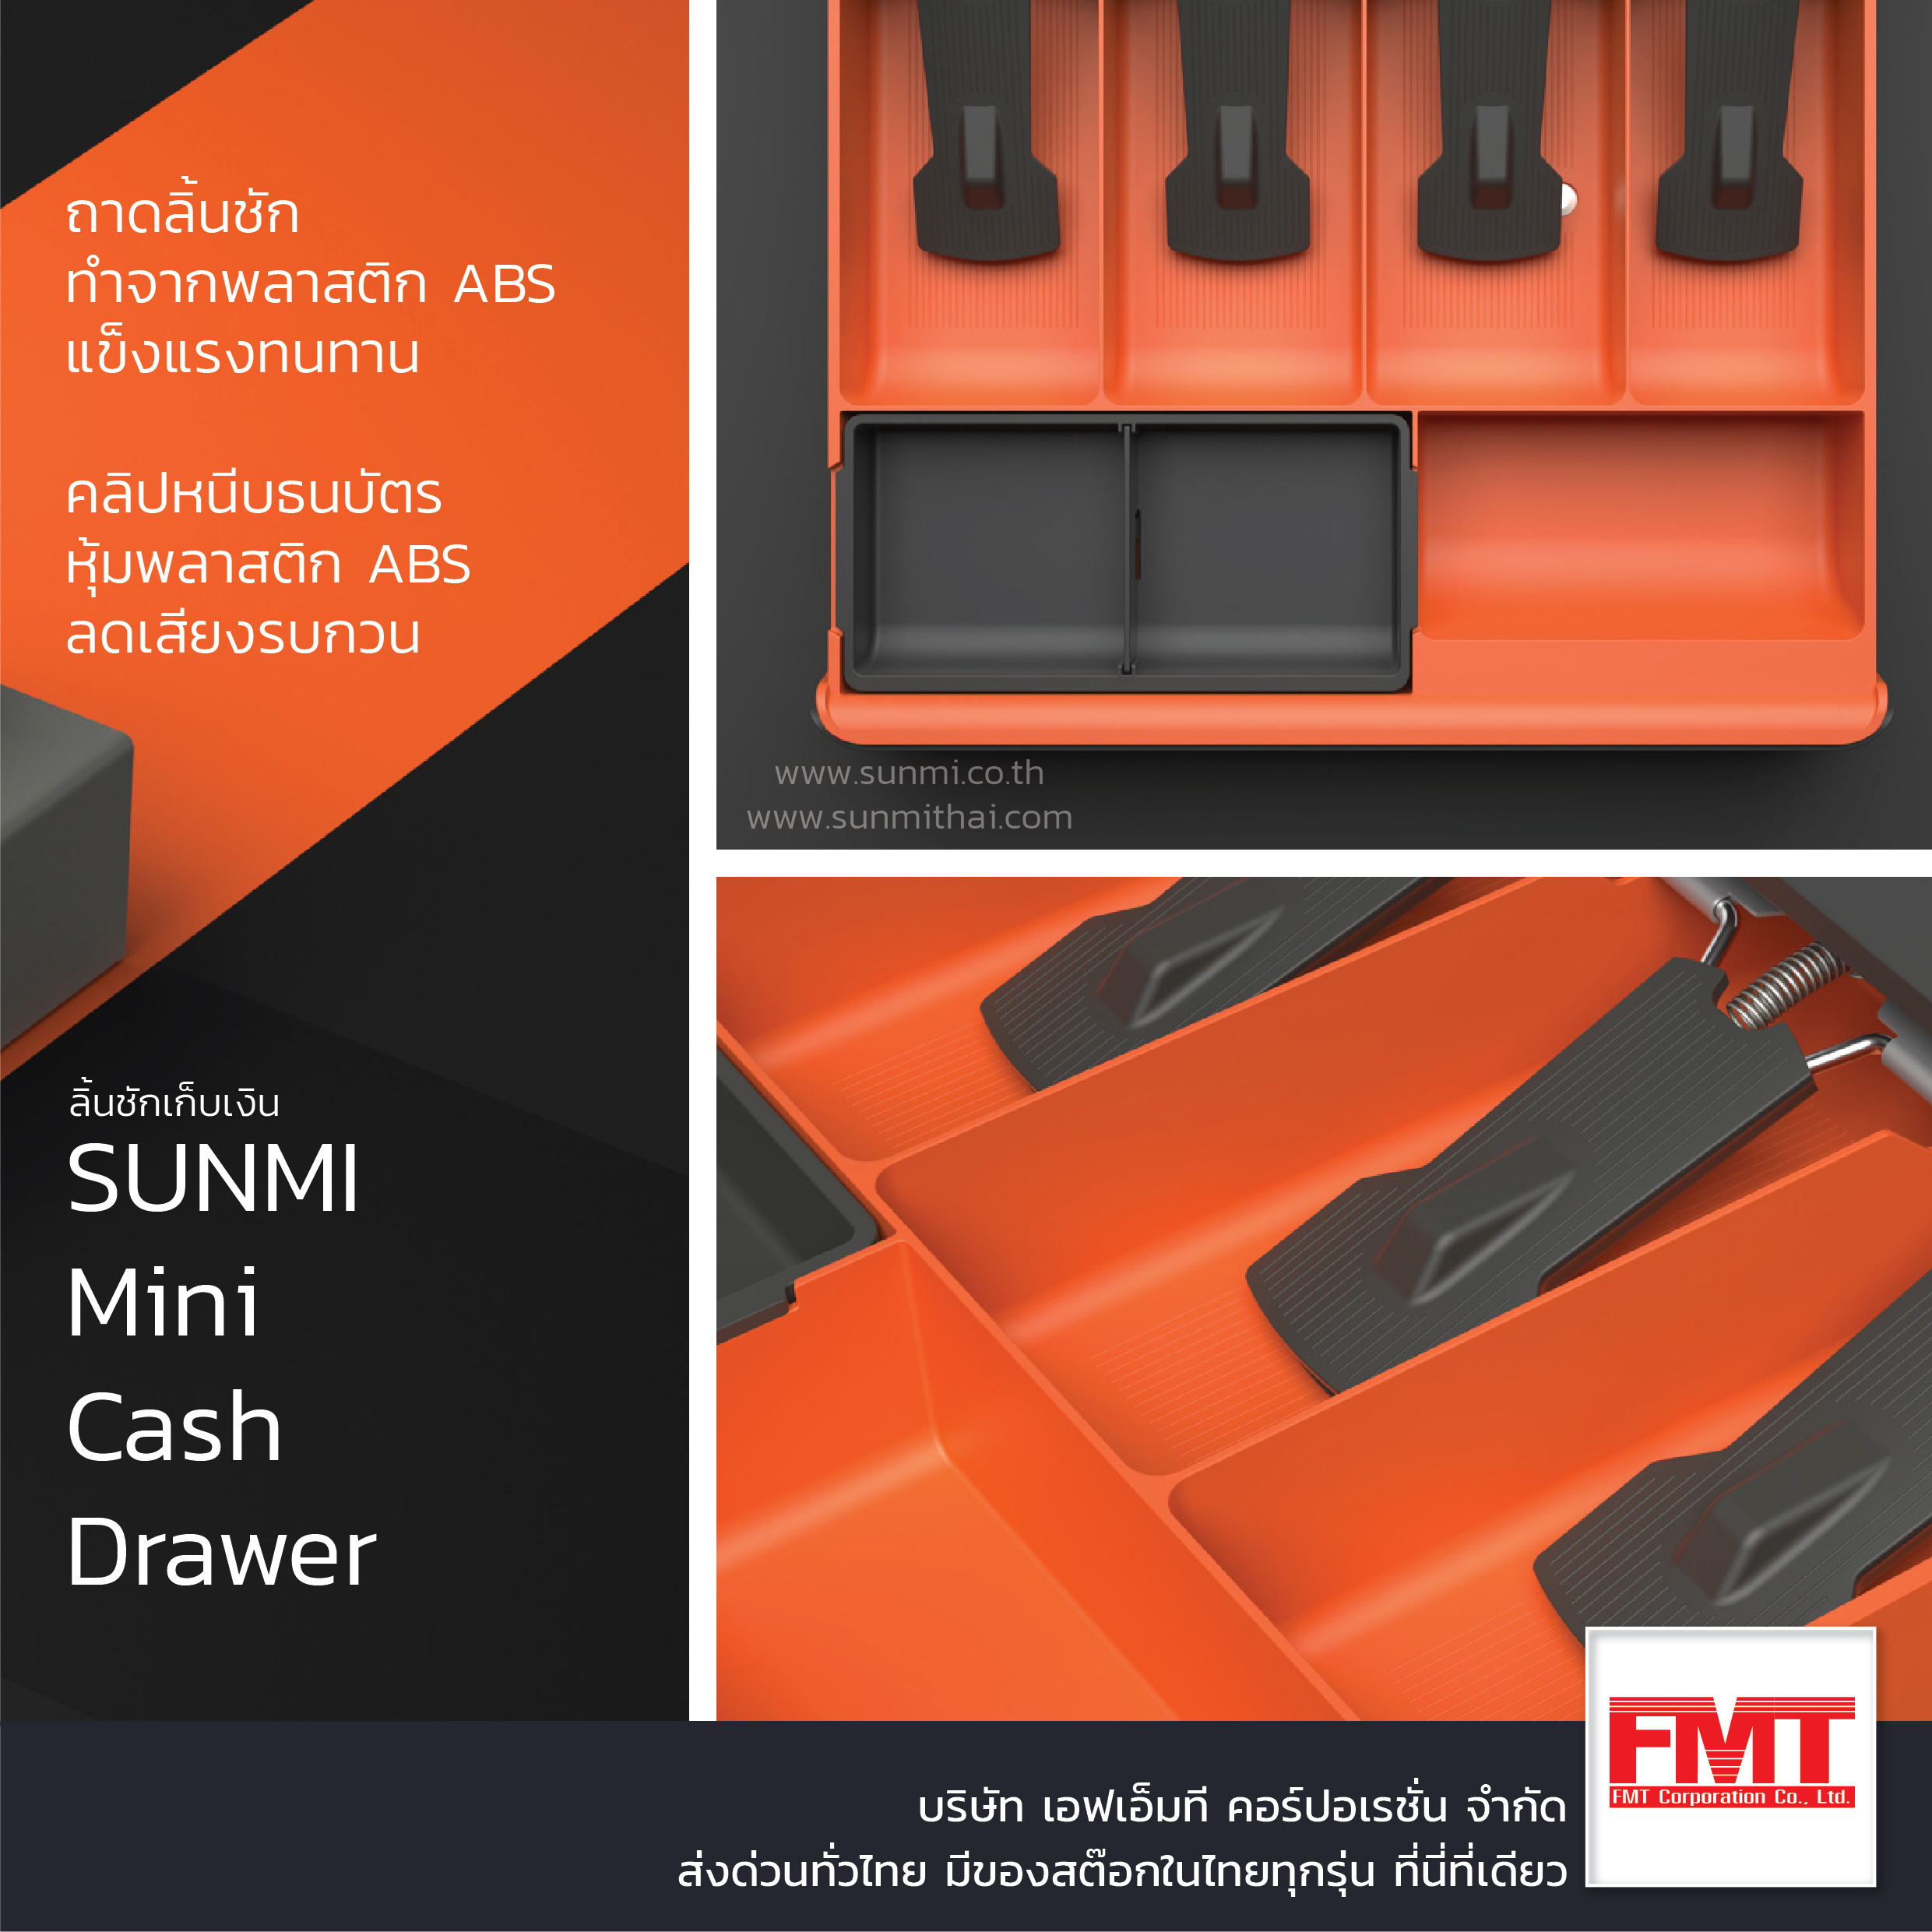 SUNMI Mini Cash Drawer